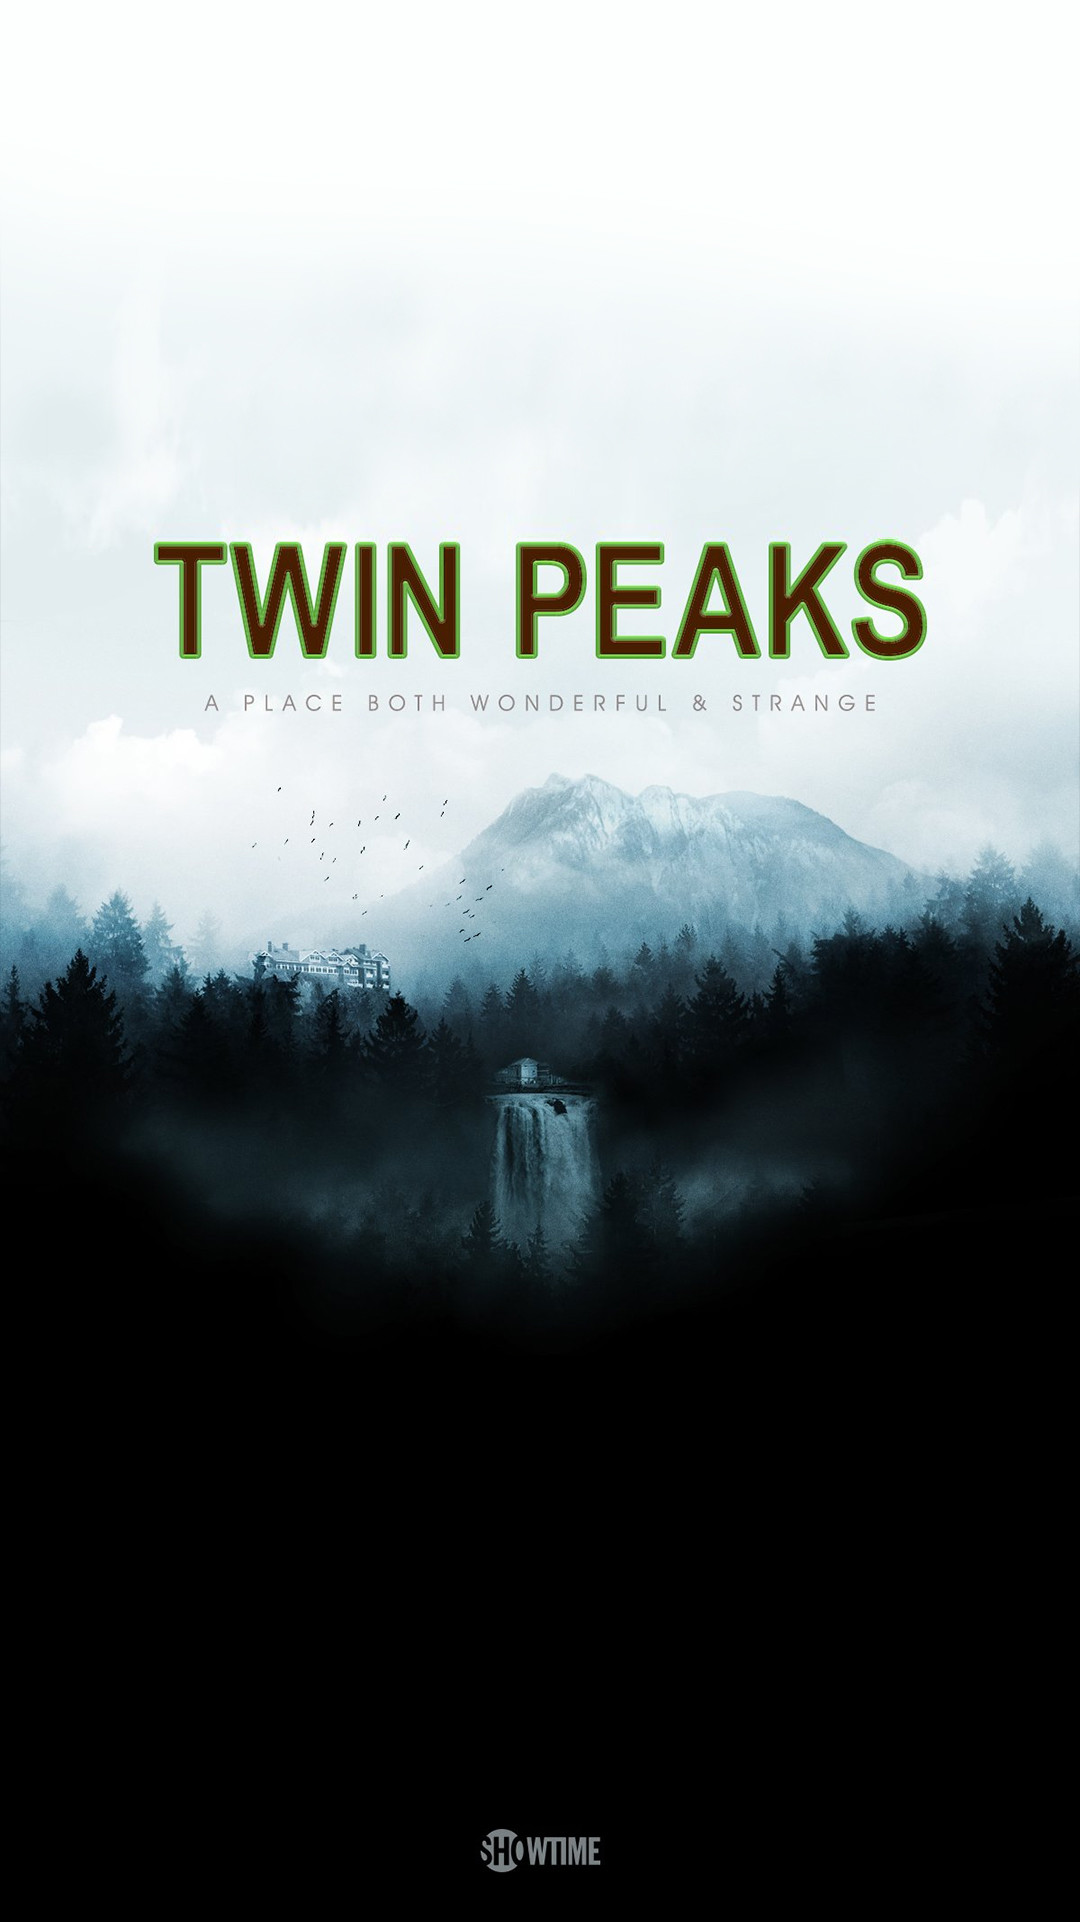 1080x1922 Best 20+ Twin peaks season 3 ideas on Pinterest | Twin peaks, Twin peaks  2016 and Twin peaks serie